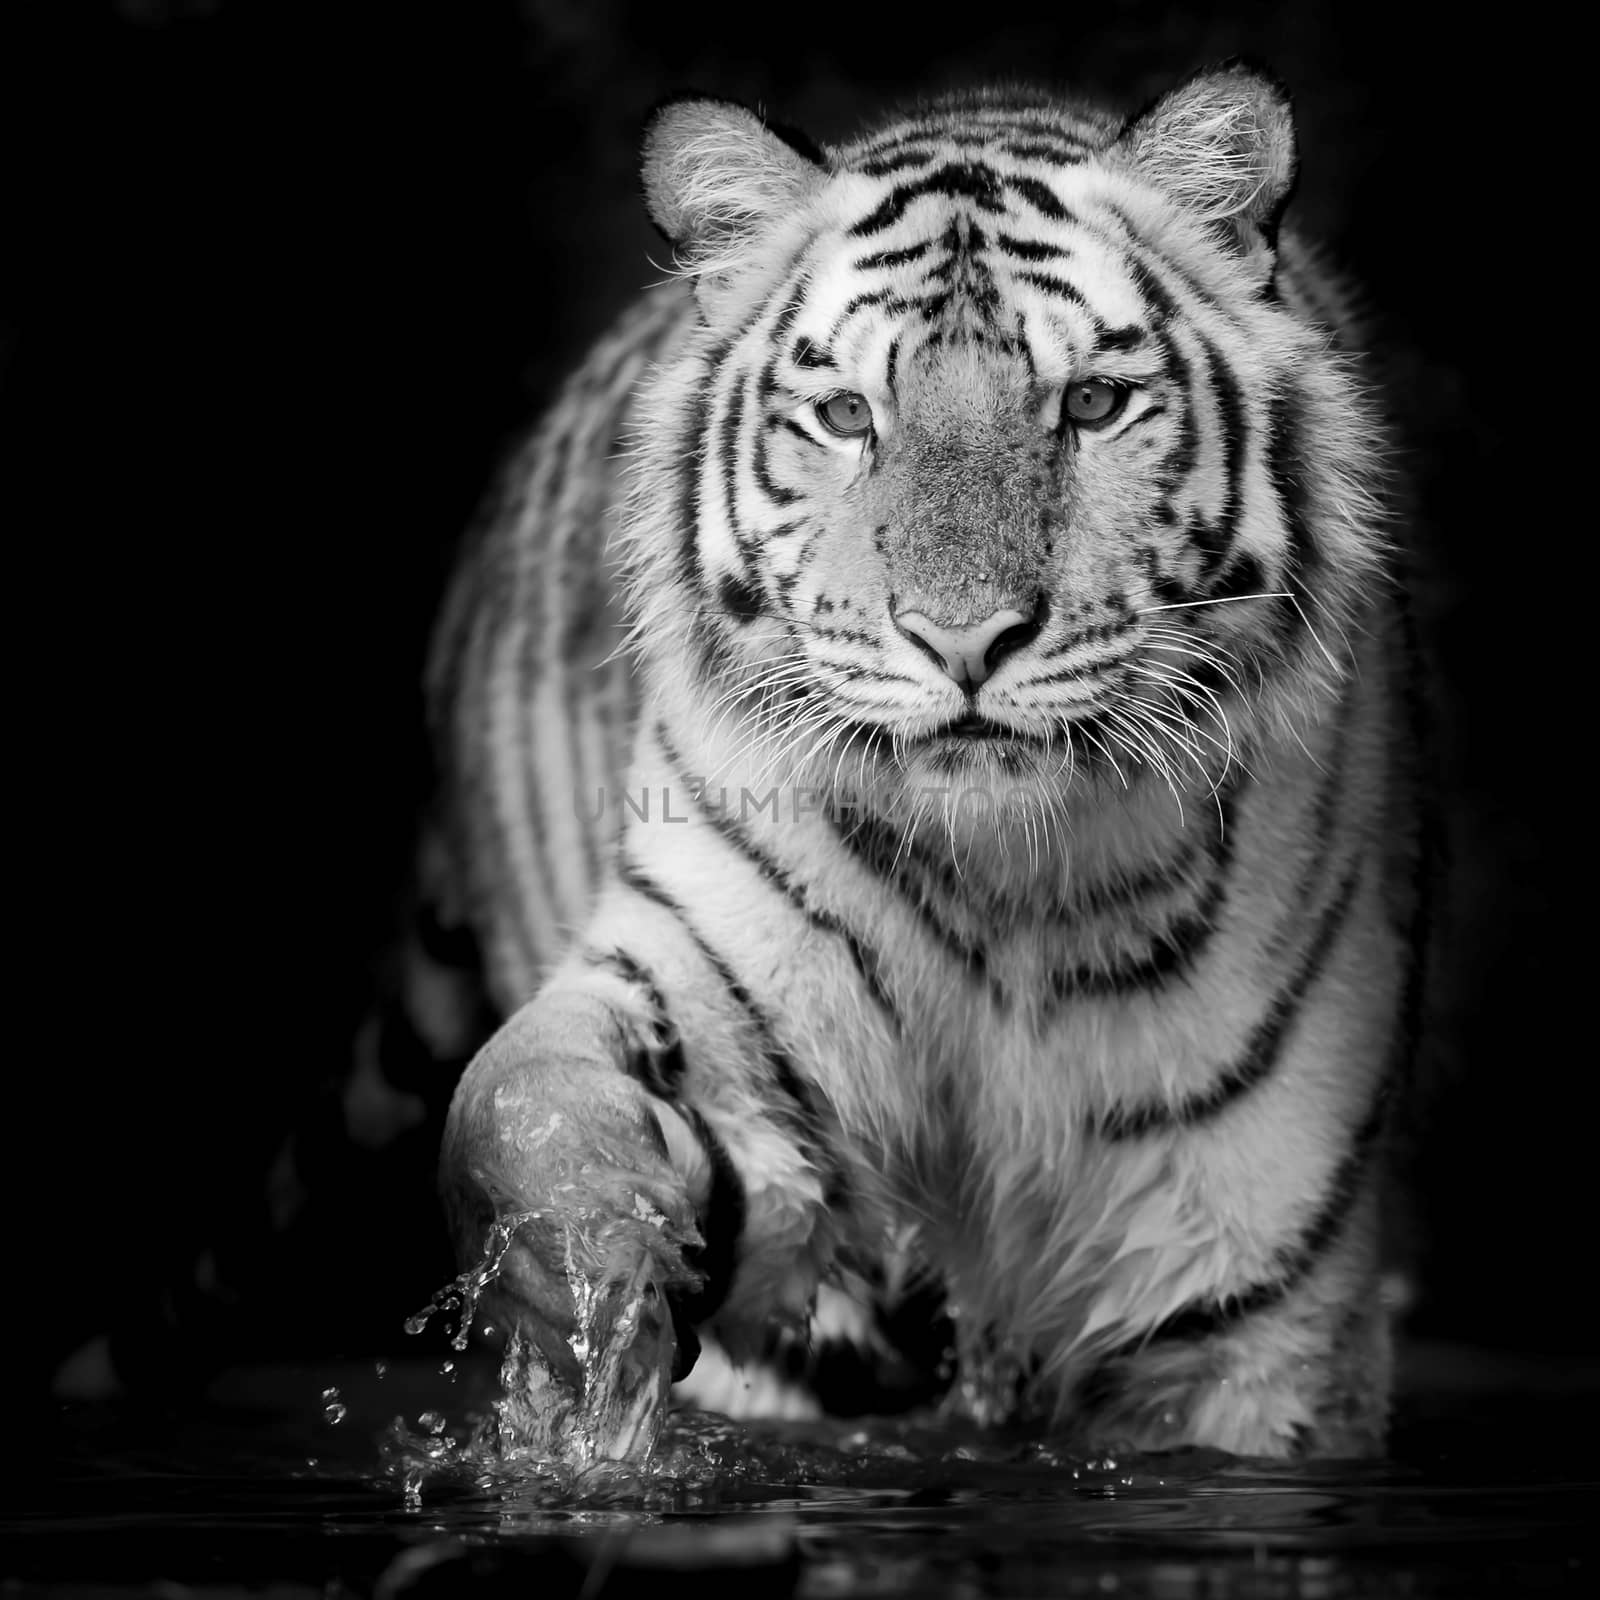 Black & White Tiger by art9858